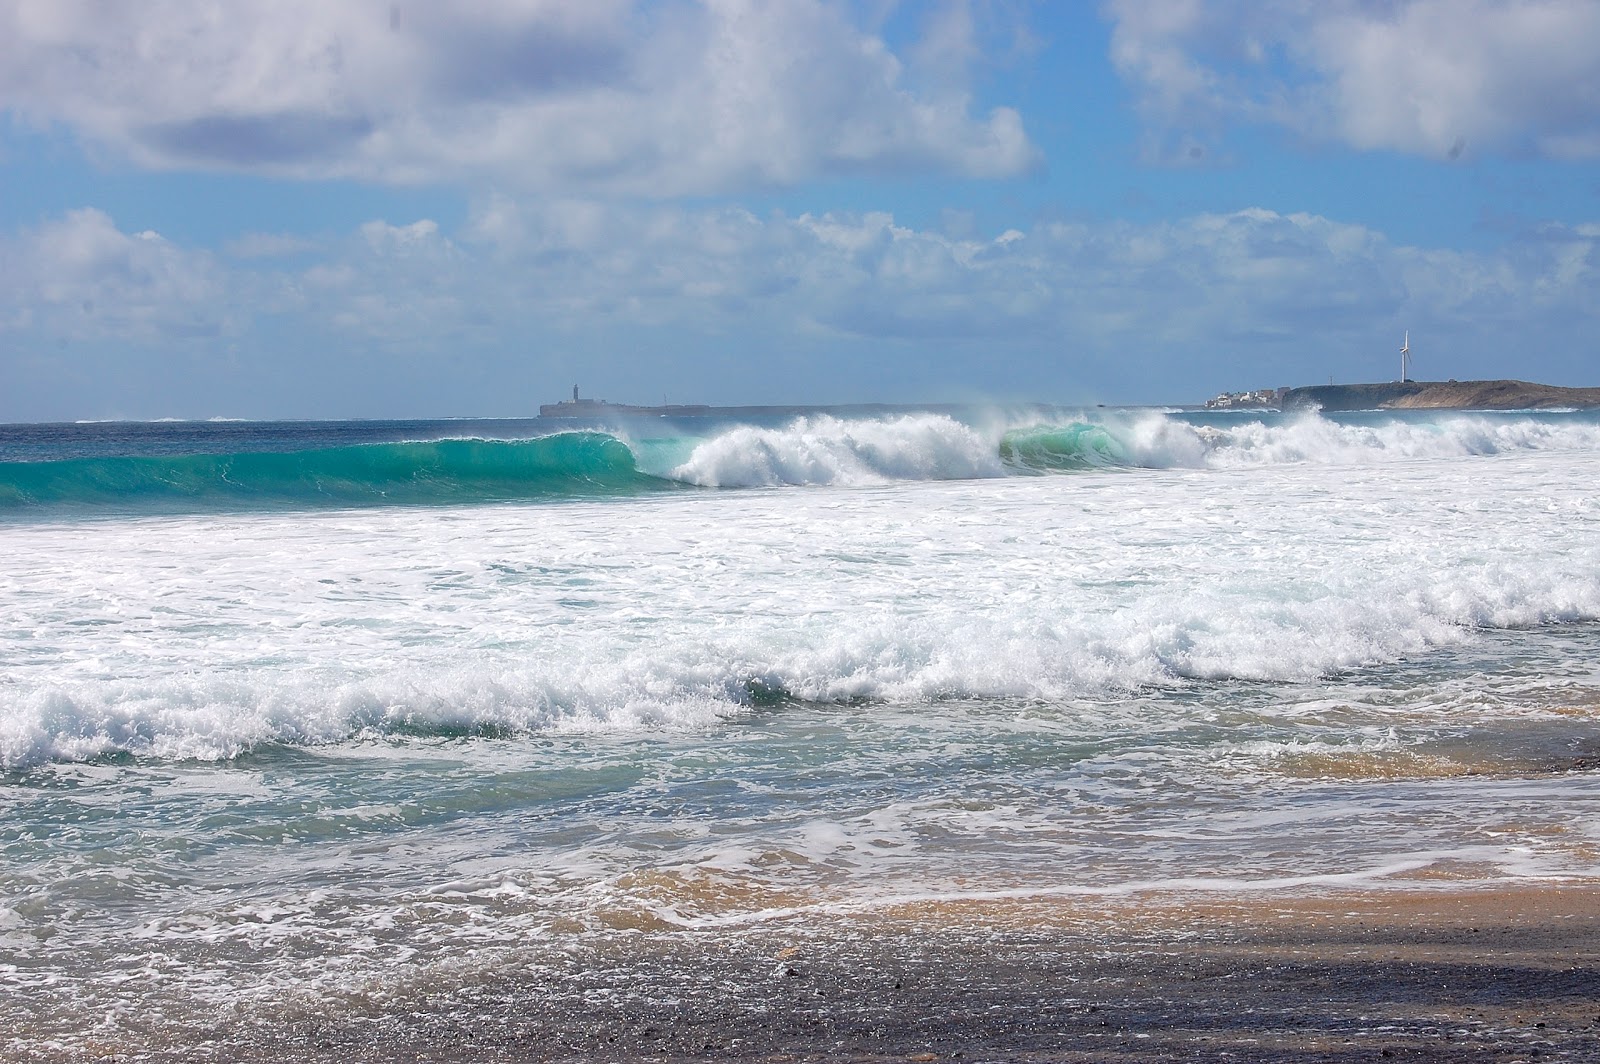 Playa "El Puertito"'in fotoğrafı geniş plaj ile birlikte